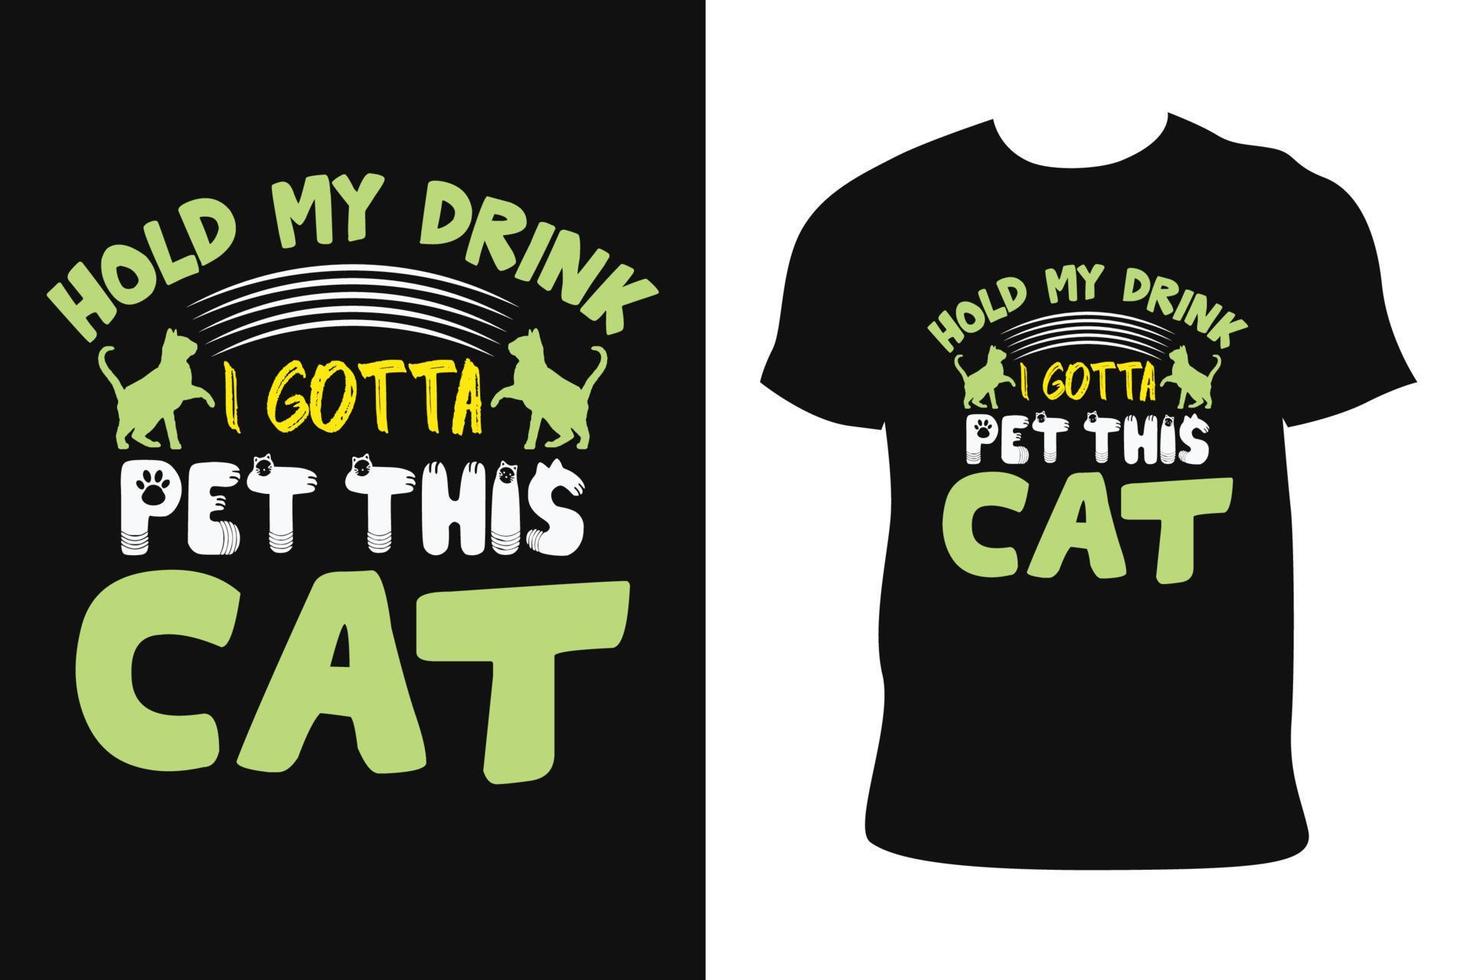 diseño de camiseta de gato. camiseta de gato. vector libre de camiseta de gato.